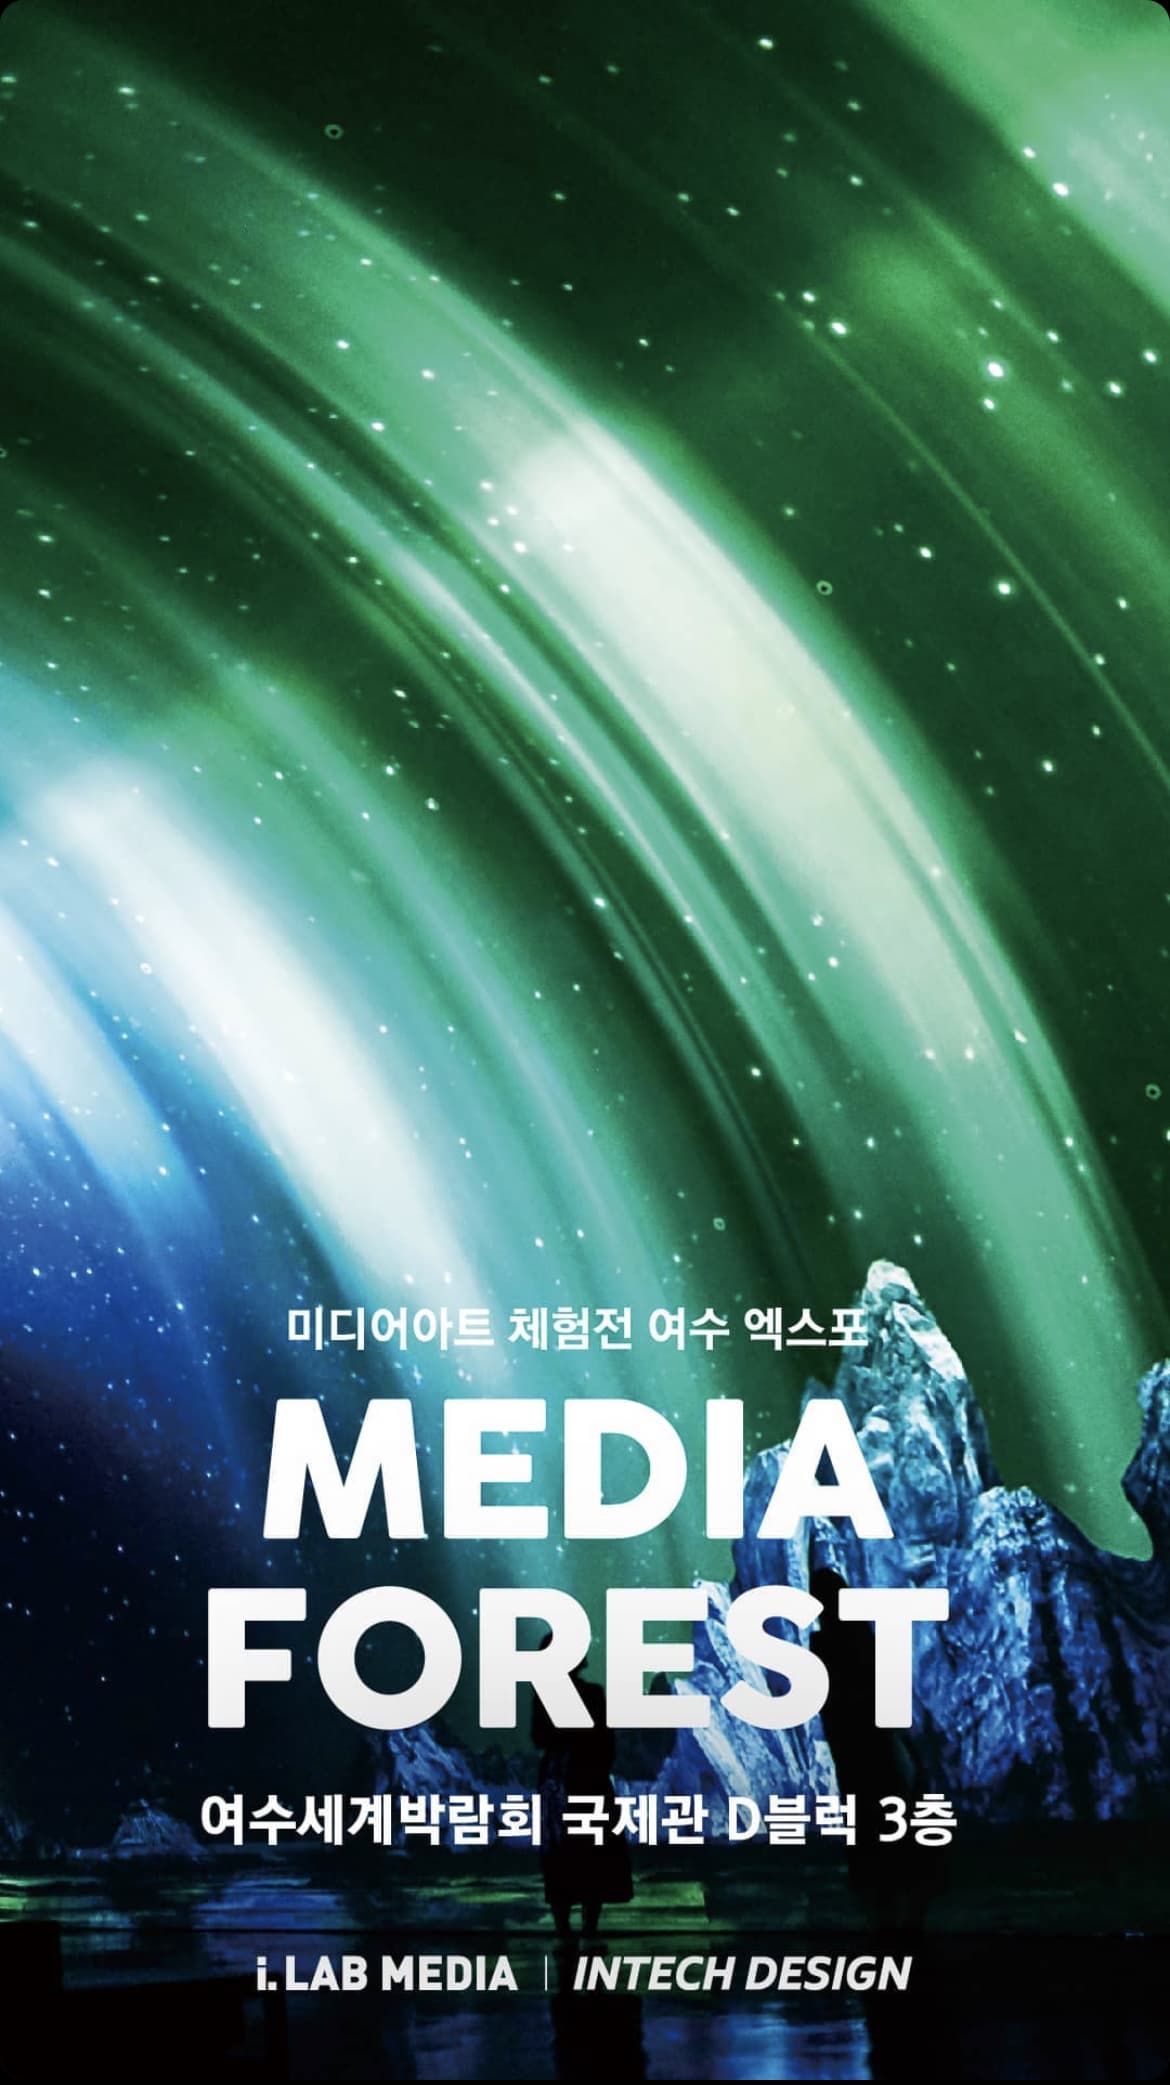 미디어아트 체험전 여수 엑스포 | MEDIA FOREST | 여수세계박람회 국제관 D블럭 3층 | MEDIA FOREST 포스터